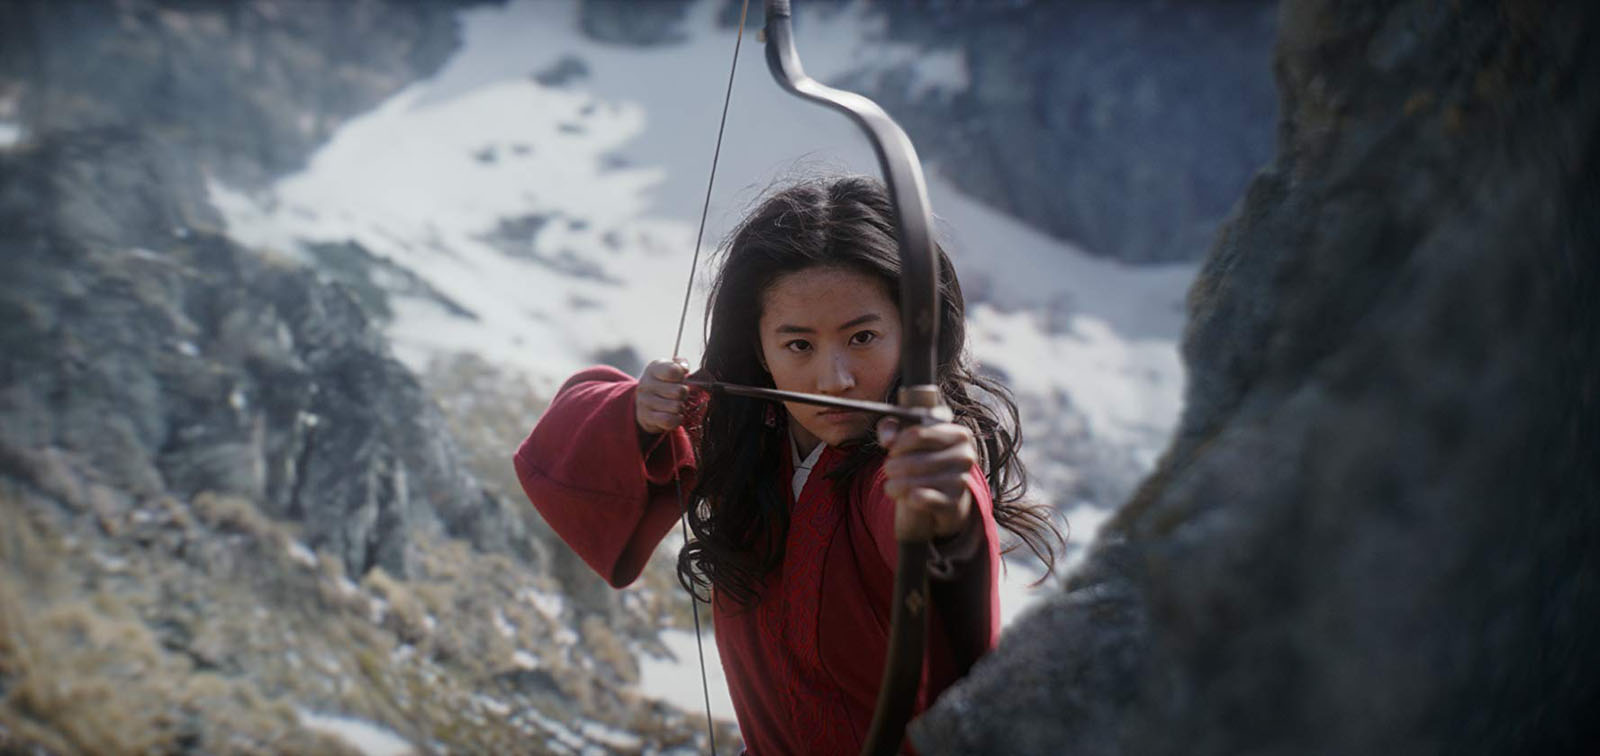 „Mulan“ startet am 26. März in den deutschen Kinos.